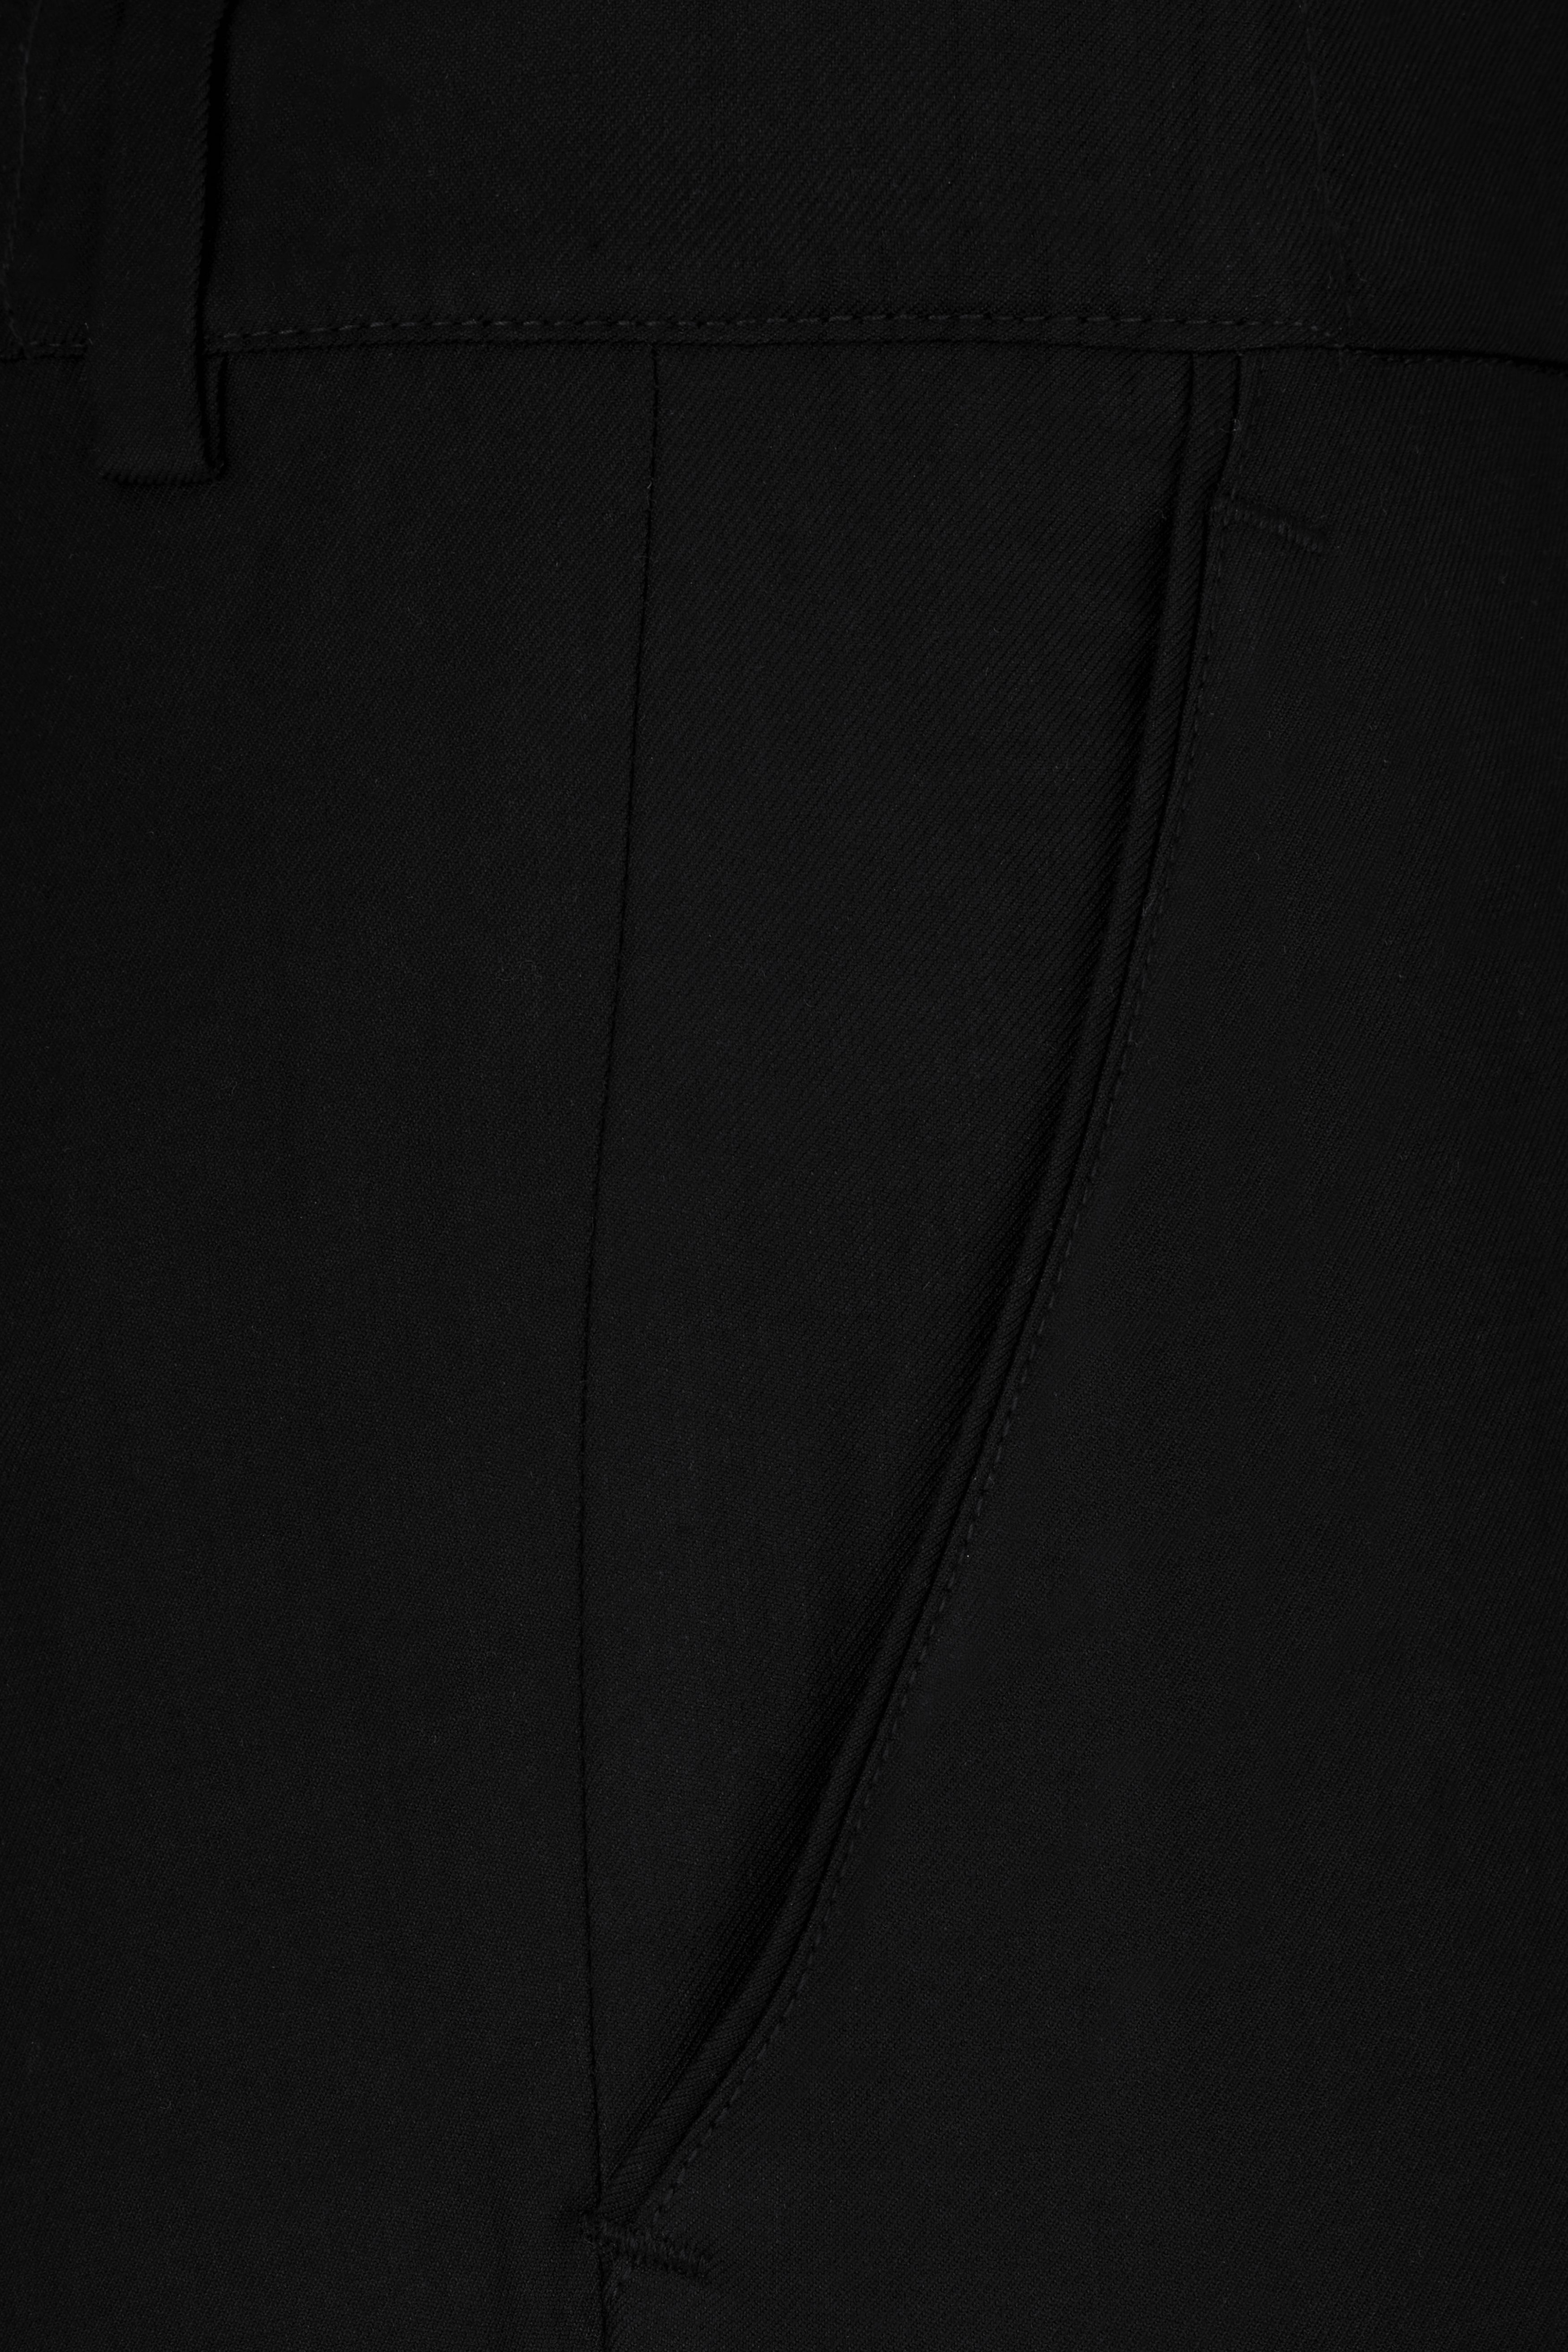 Half Solid Black and Half Tikki Work Wool Rich Designer Suit ST2808-SB-D479-36, ST2808-SB-D479-38, ST2808-SB-D479-40, ST2808-SB-D479-42, ST2808-SB-D479-44, ST2808-SB-D479-46, ST2808-SB-D479-48, ST2808-SB-D479-50, ST2808-SB-D479-52, ST2808-SB-D479-54, ST2808-SB-D479-56, ST2808-SB-D479-58, ST2808-SB-D479-60